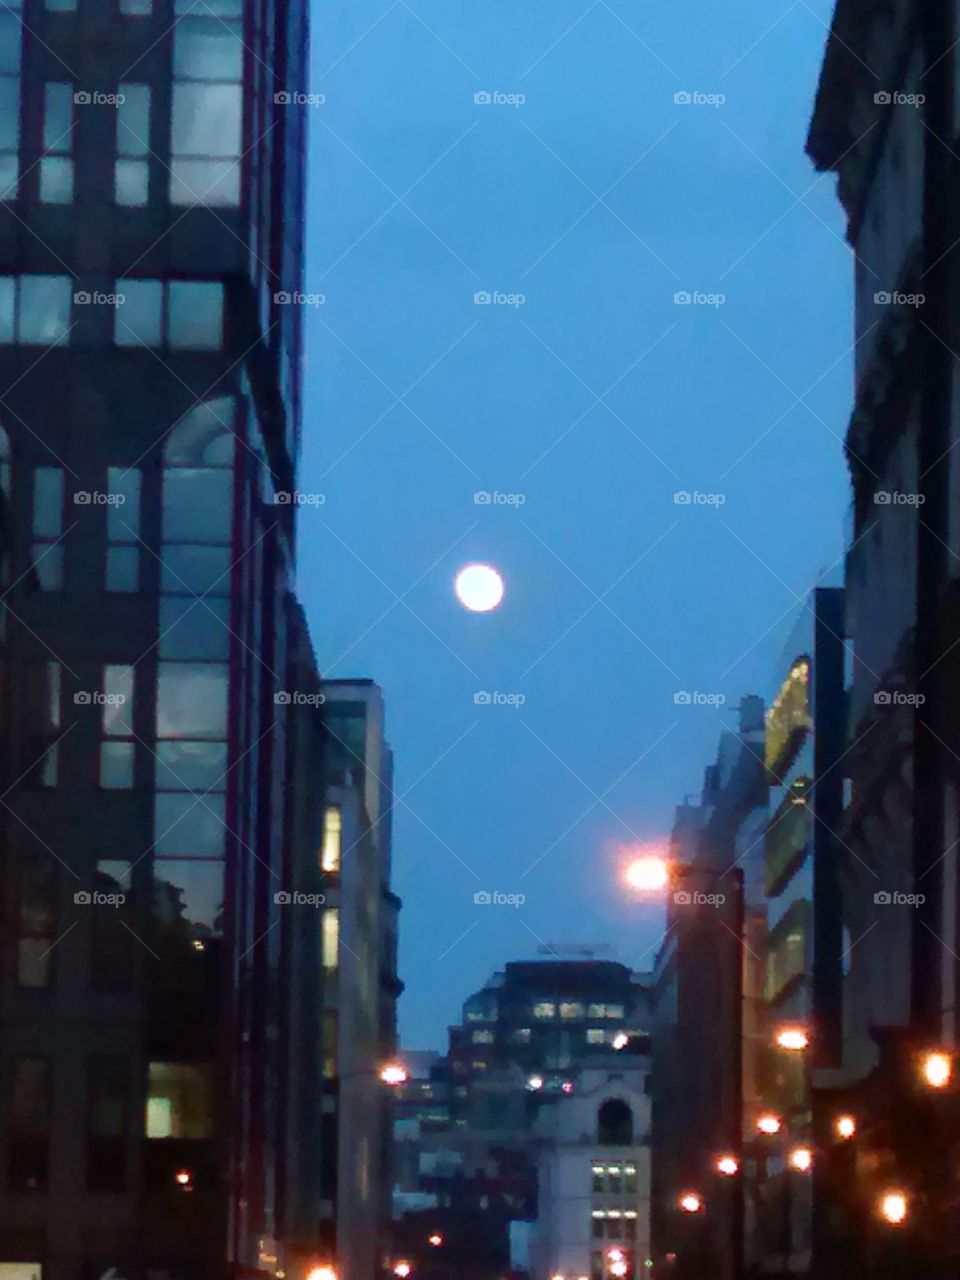 Full moonlight over London